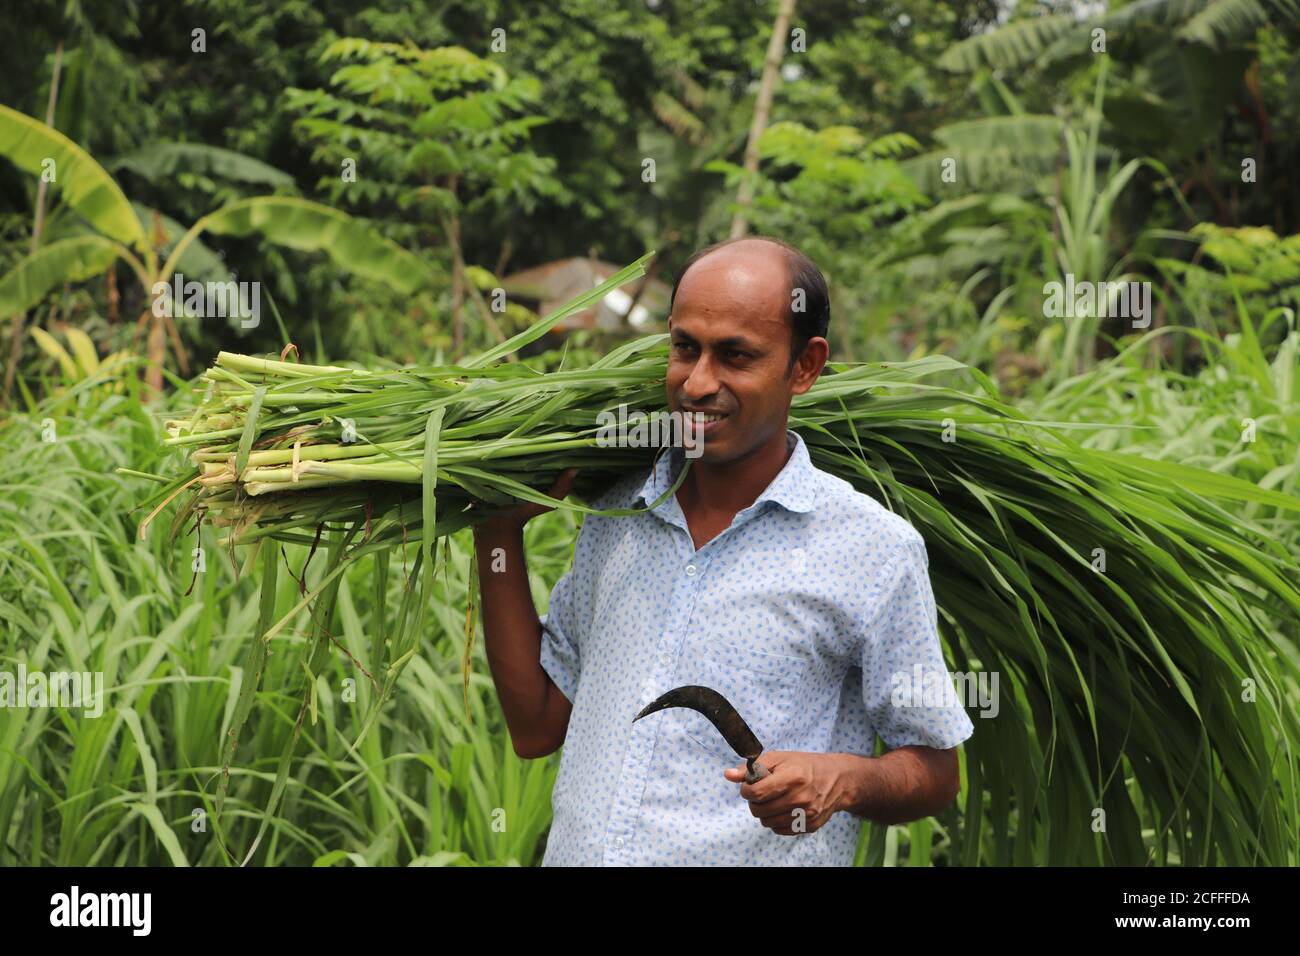 Lächelnder asiatischer Bauer, der frisches grünes Gras auf seiner Schulter trägt Zur Fütterung von Rindern Stockfoto